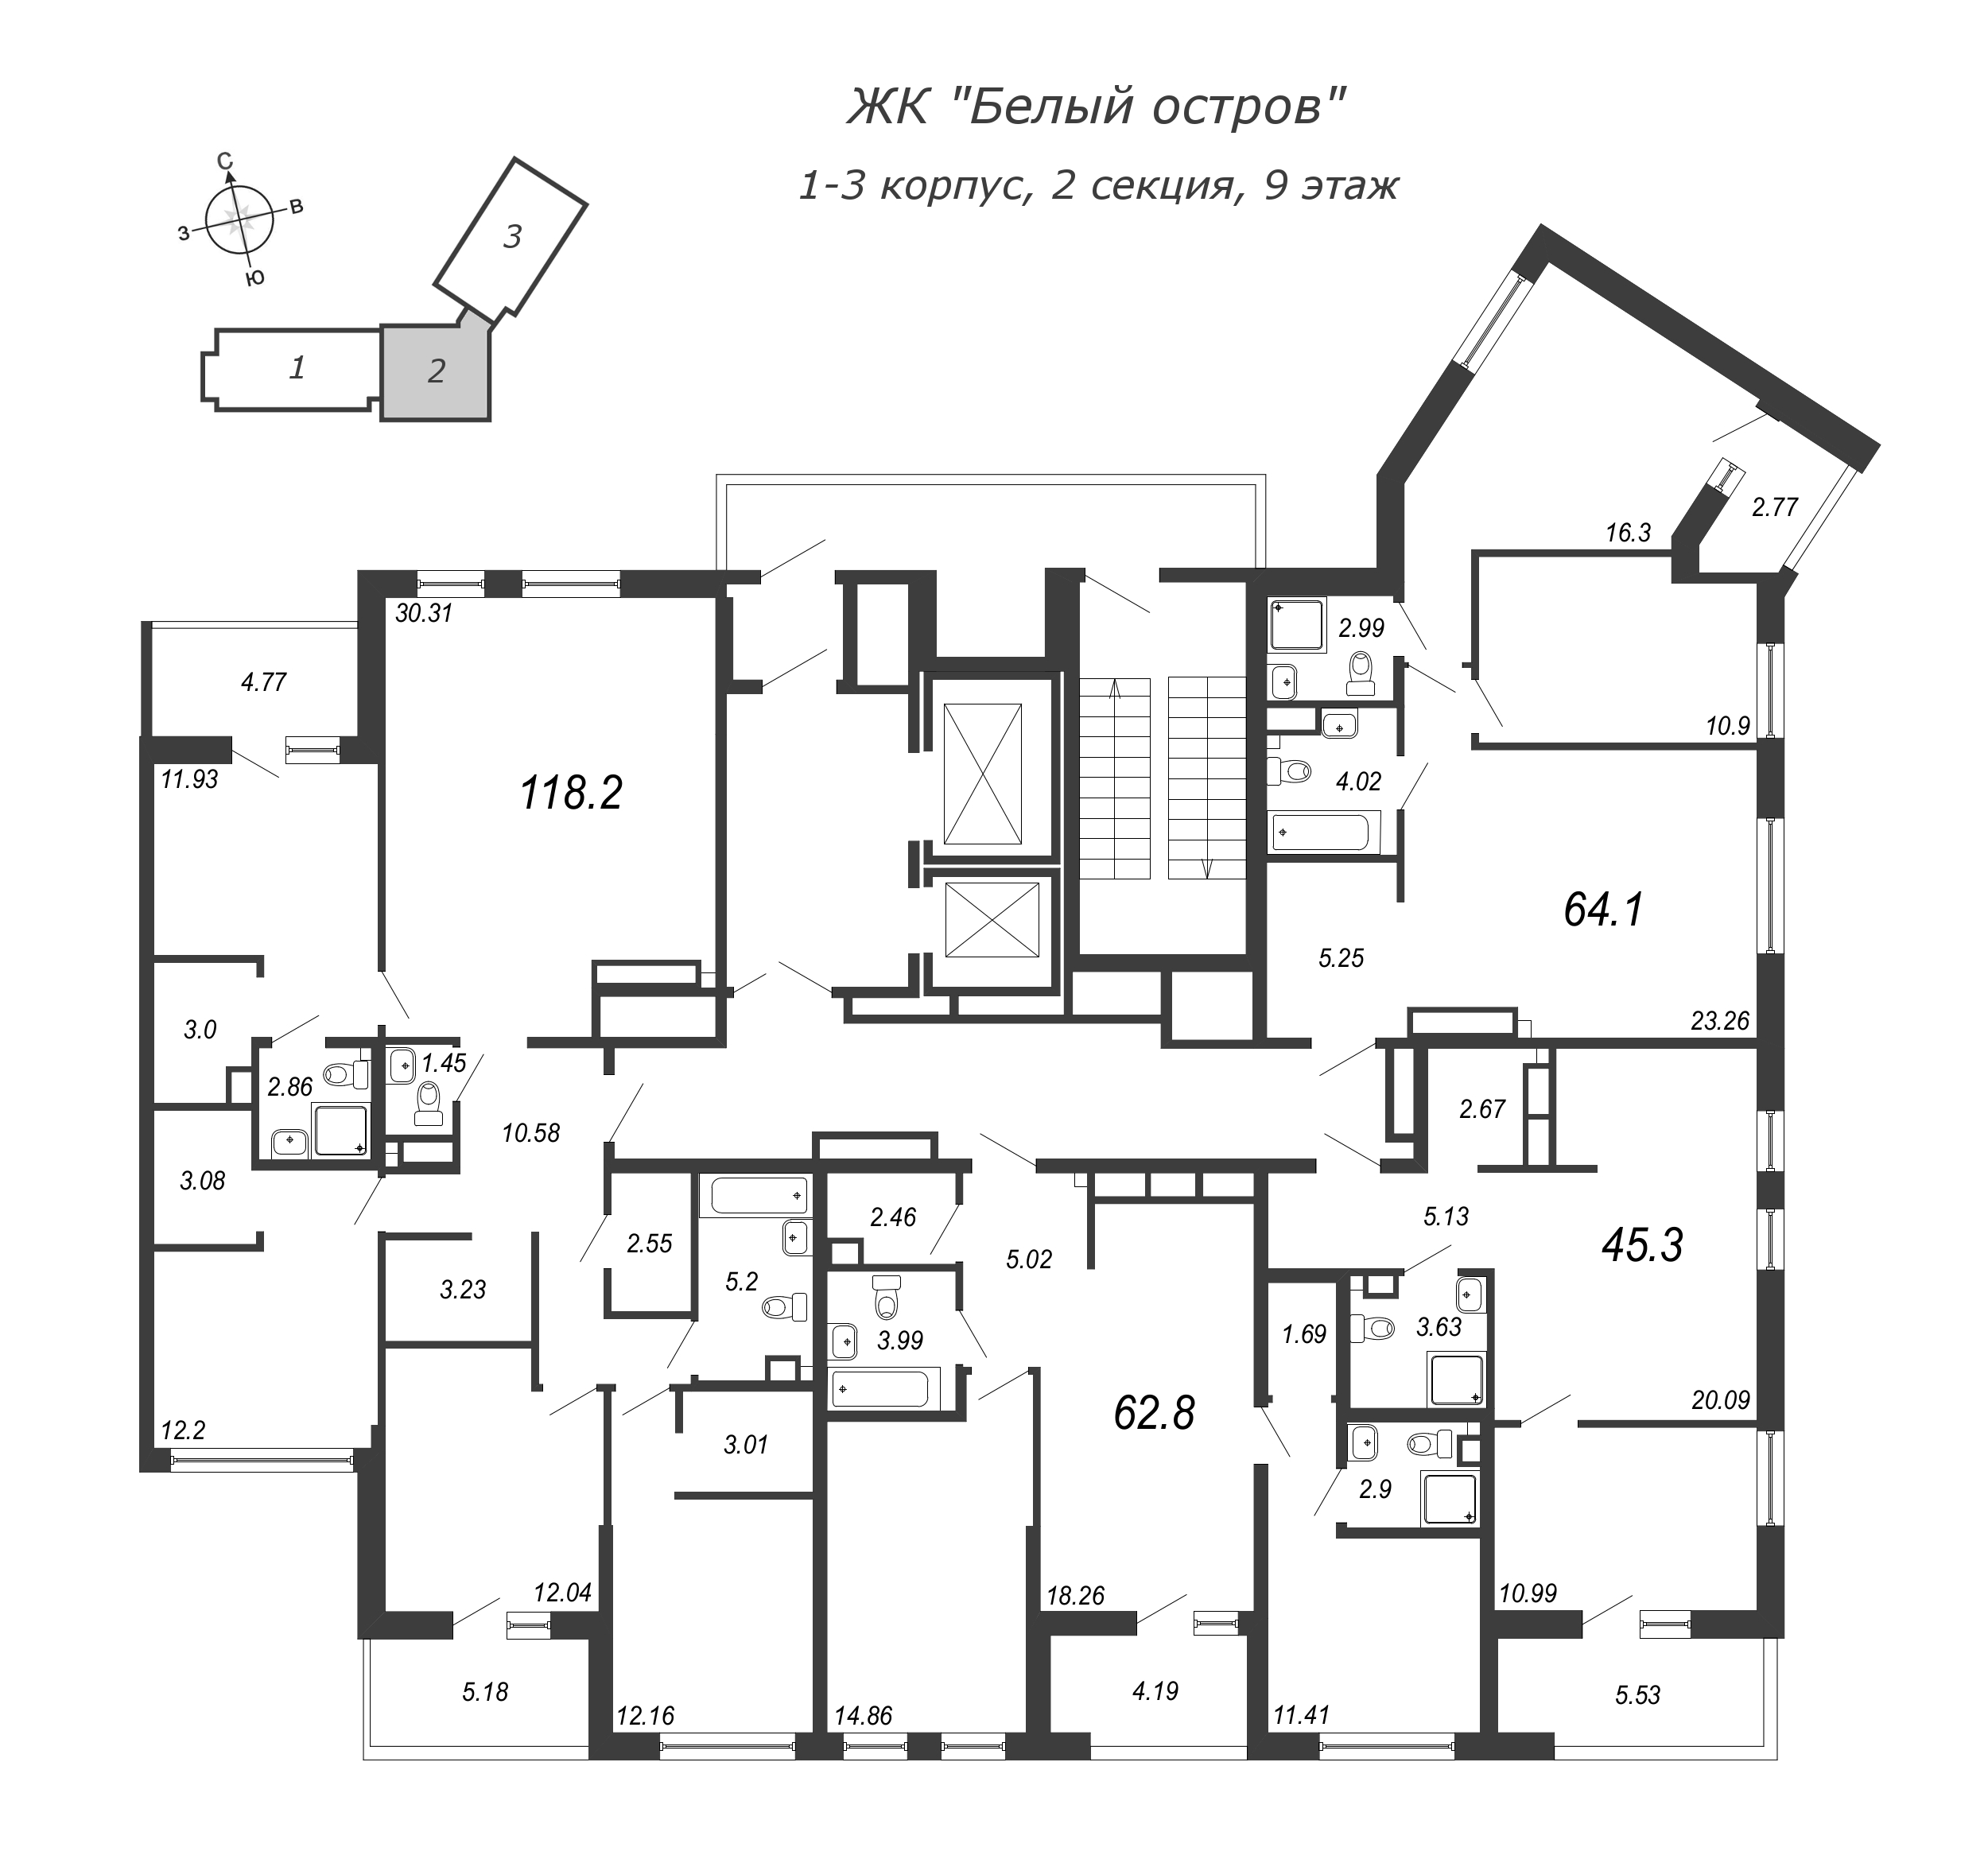 5-комнатная (Евро) квартира, 121.9 м² в ЖК "Белый остров" - планировка этажа